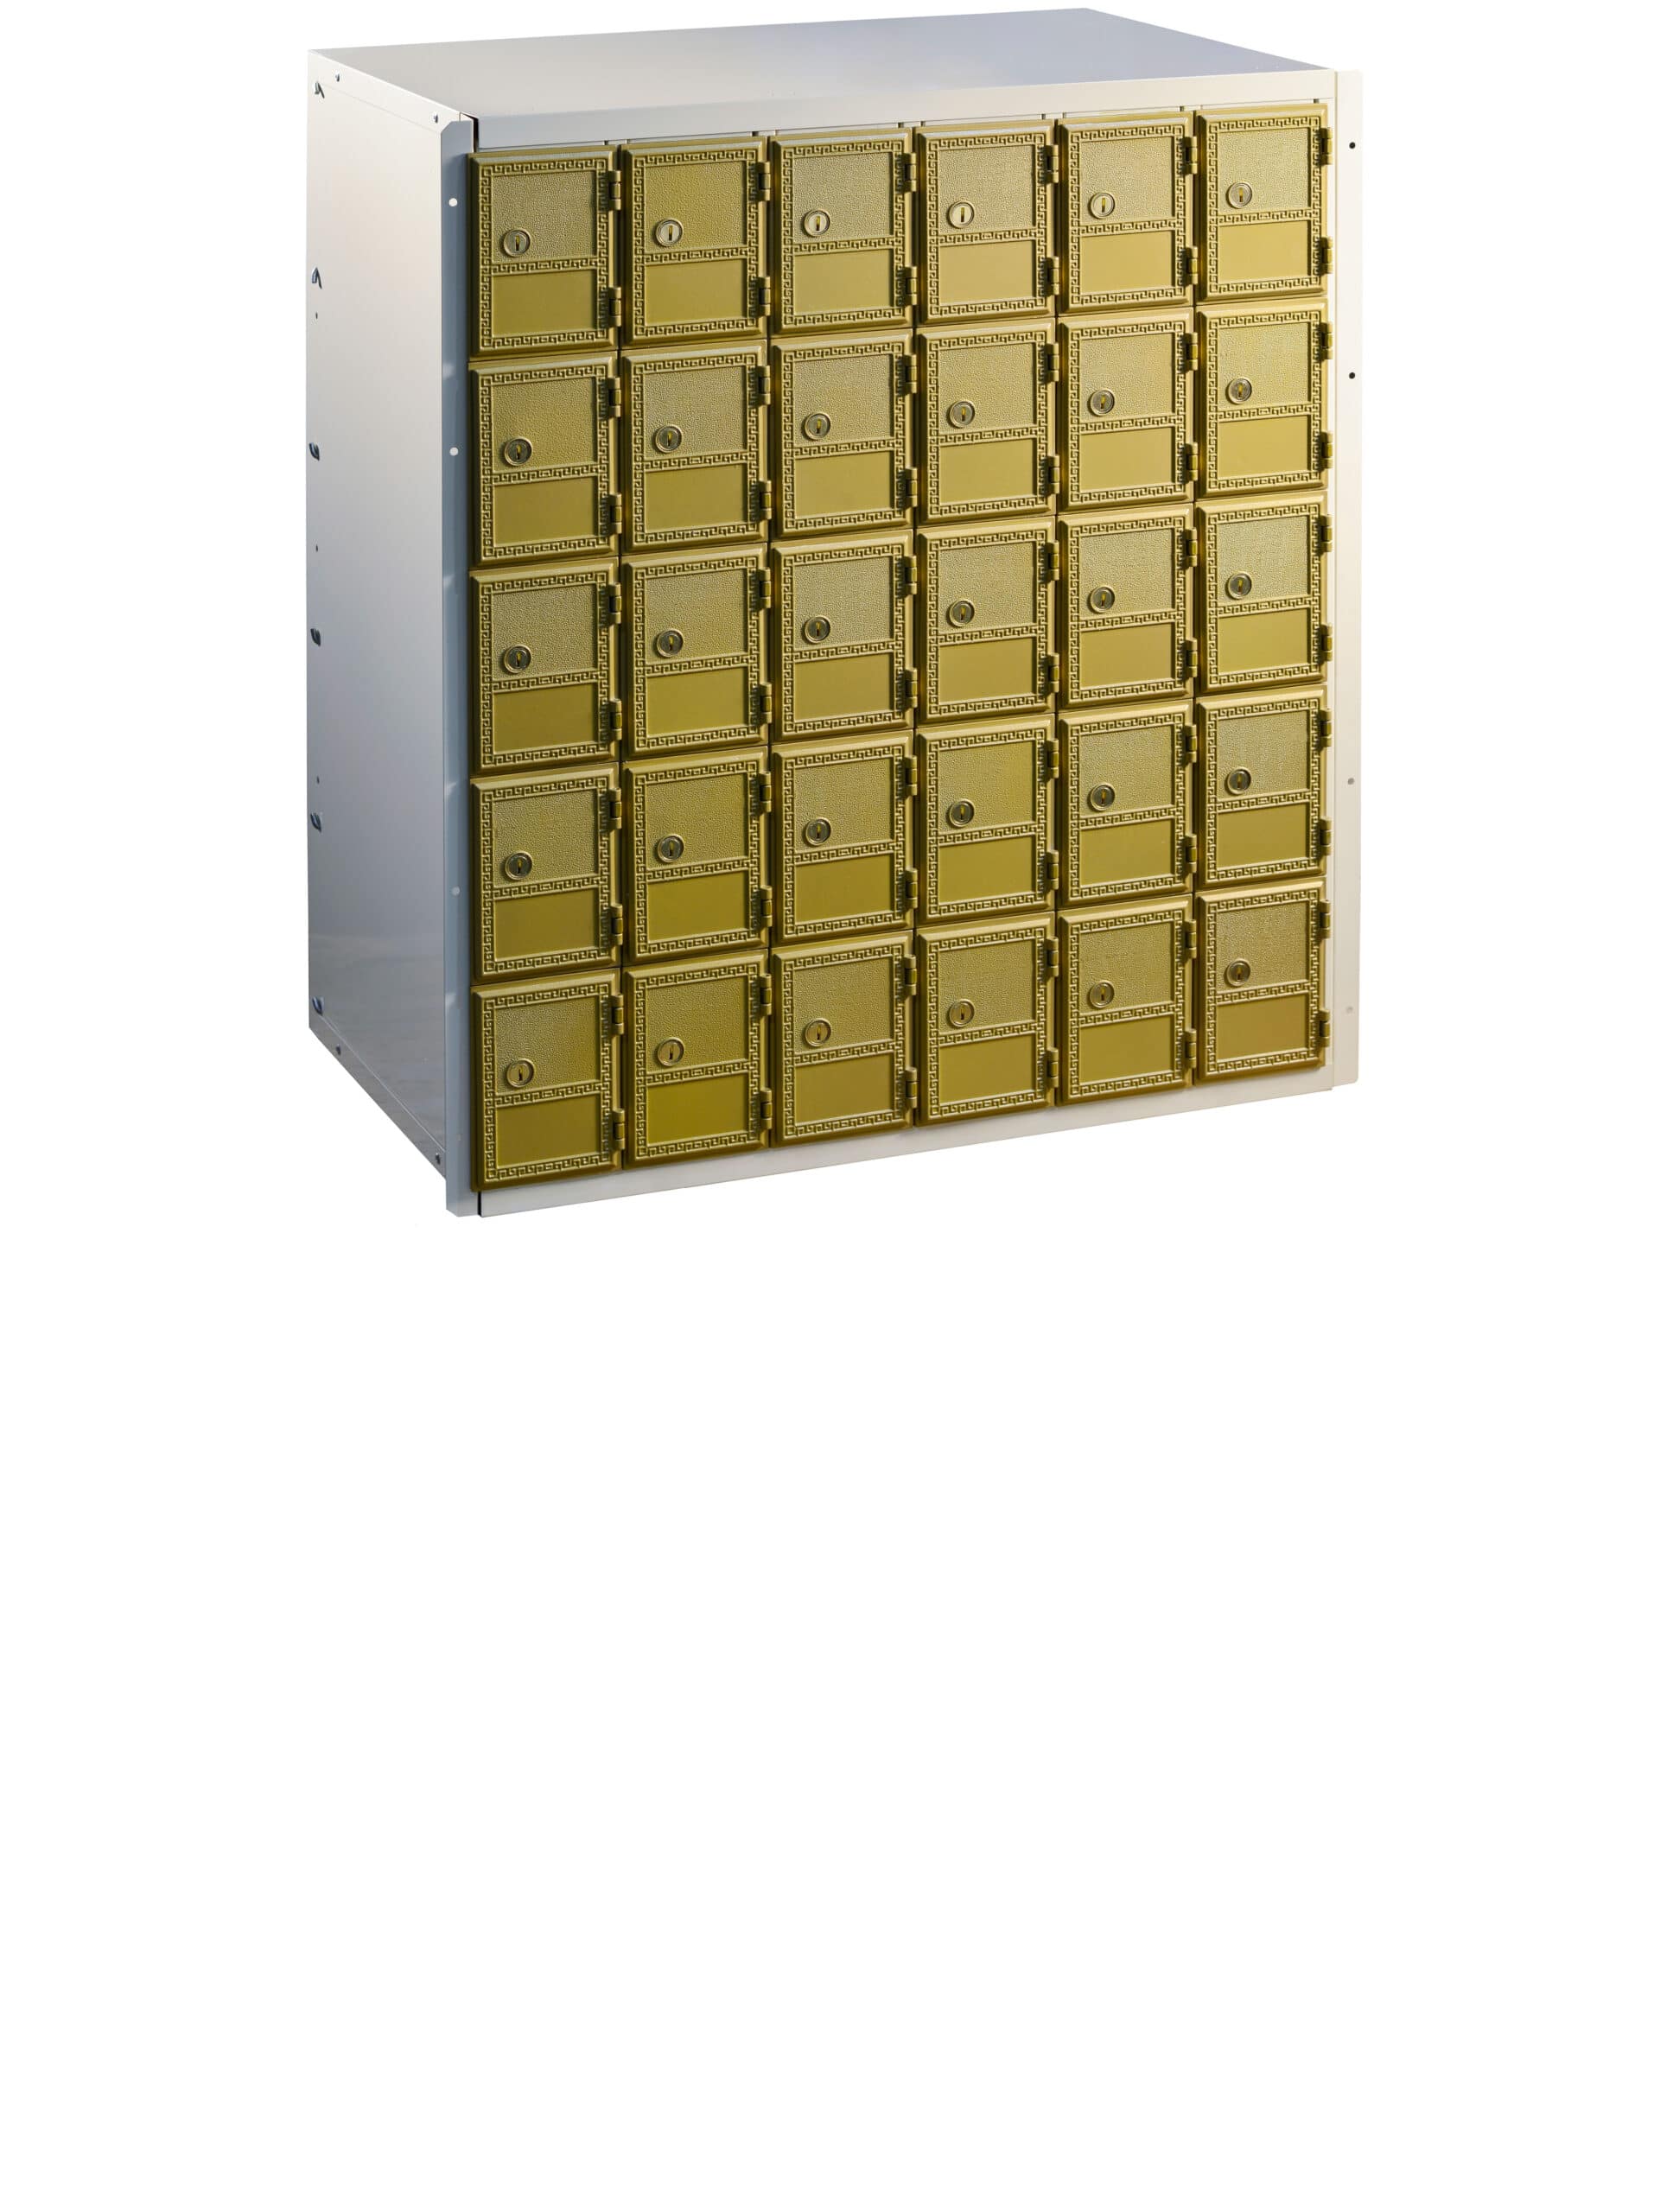 American Locker ups mailbox locker